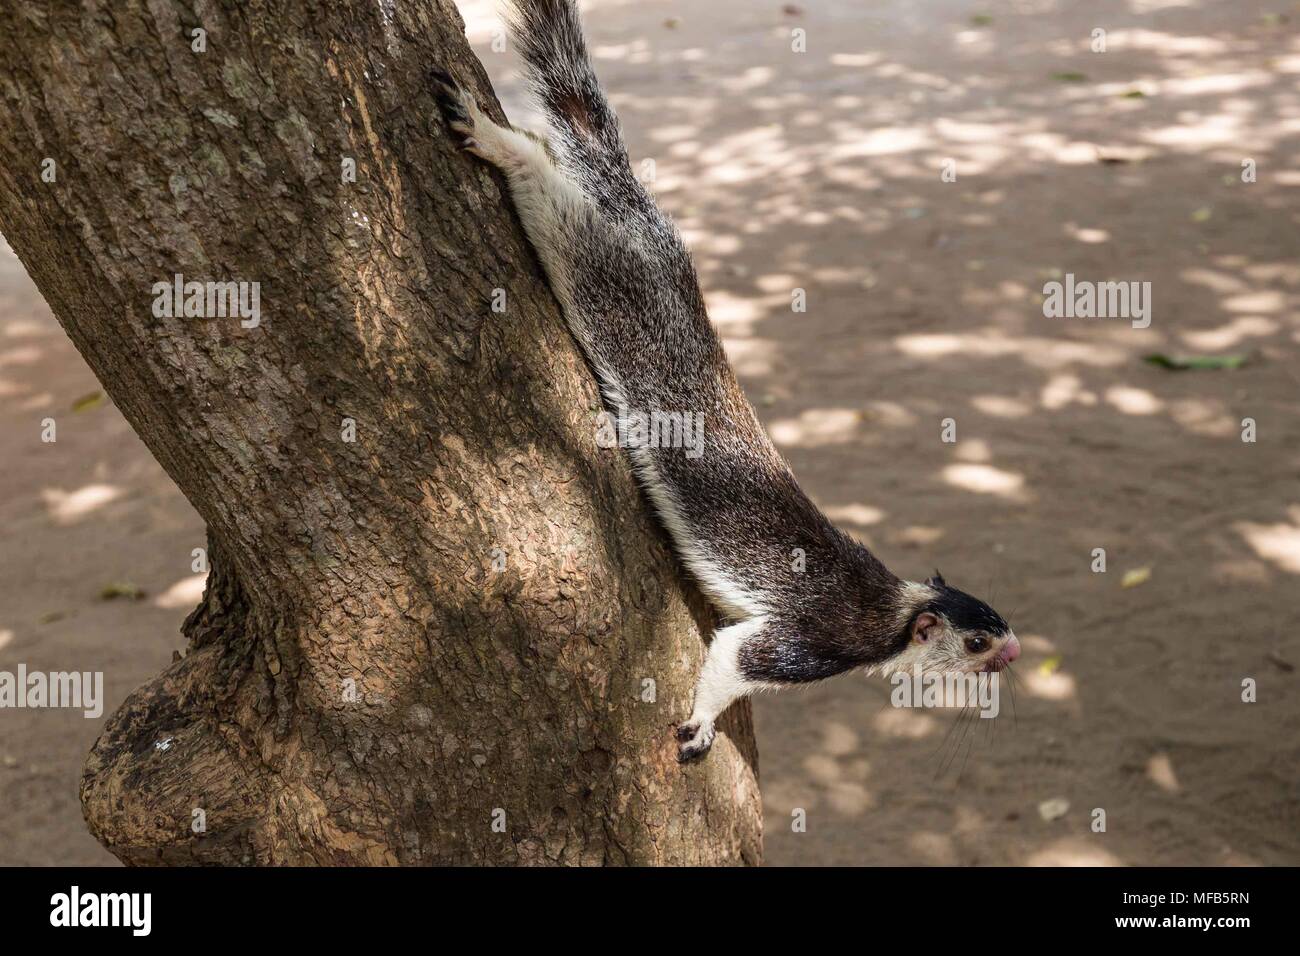 Giant squirrel in Sri Lanka Stock Photo